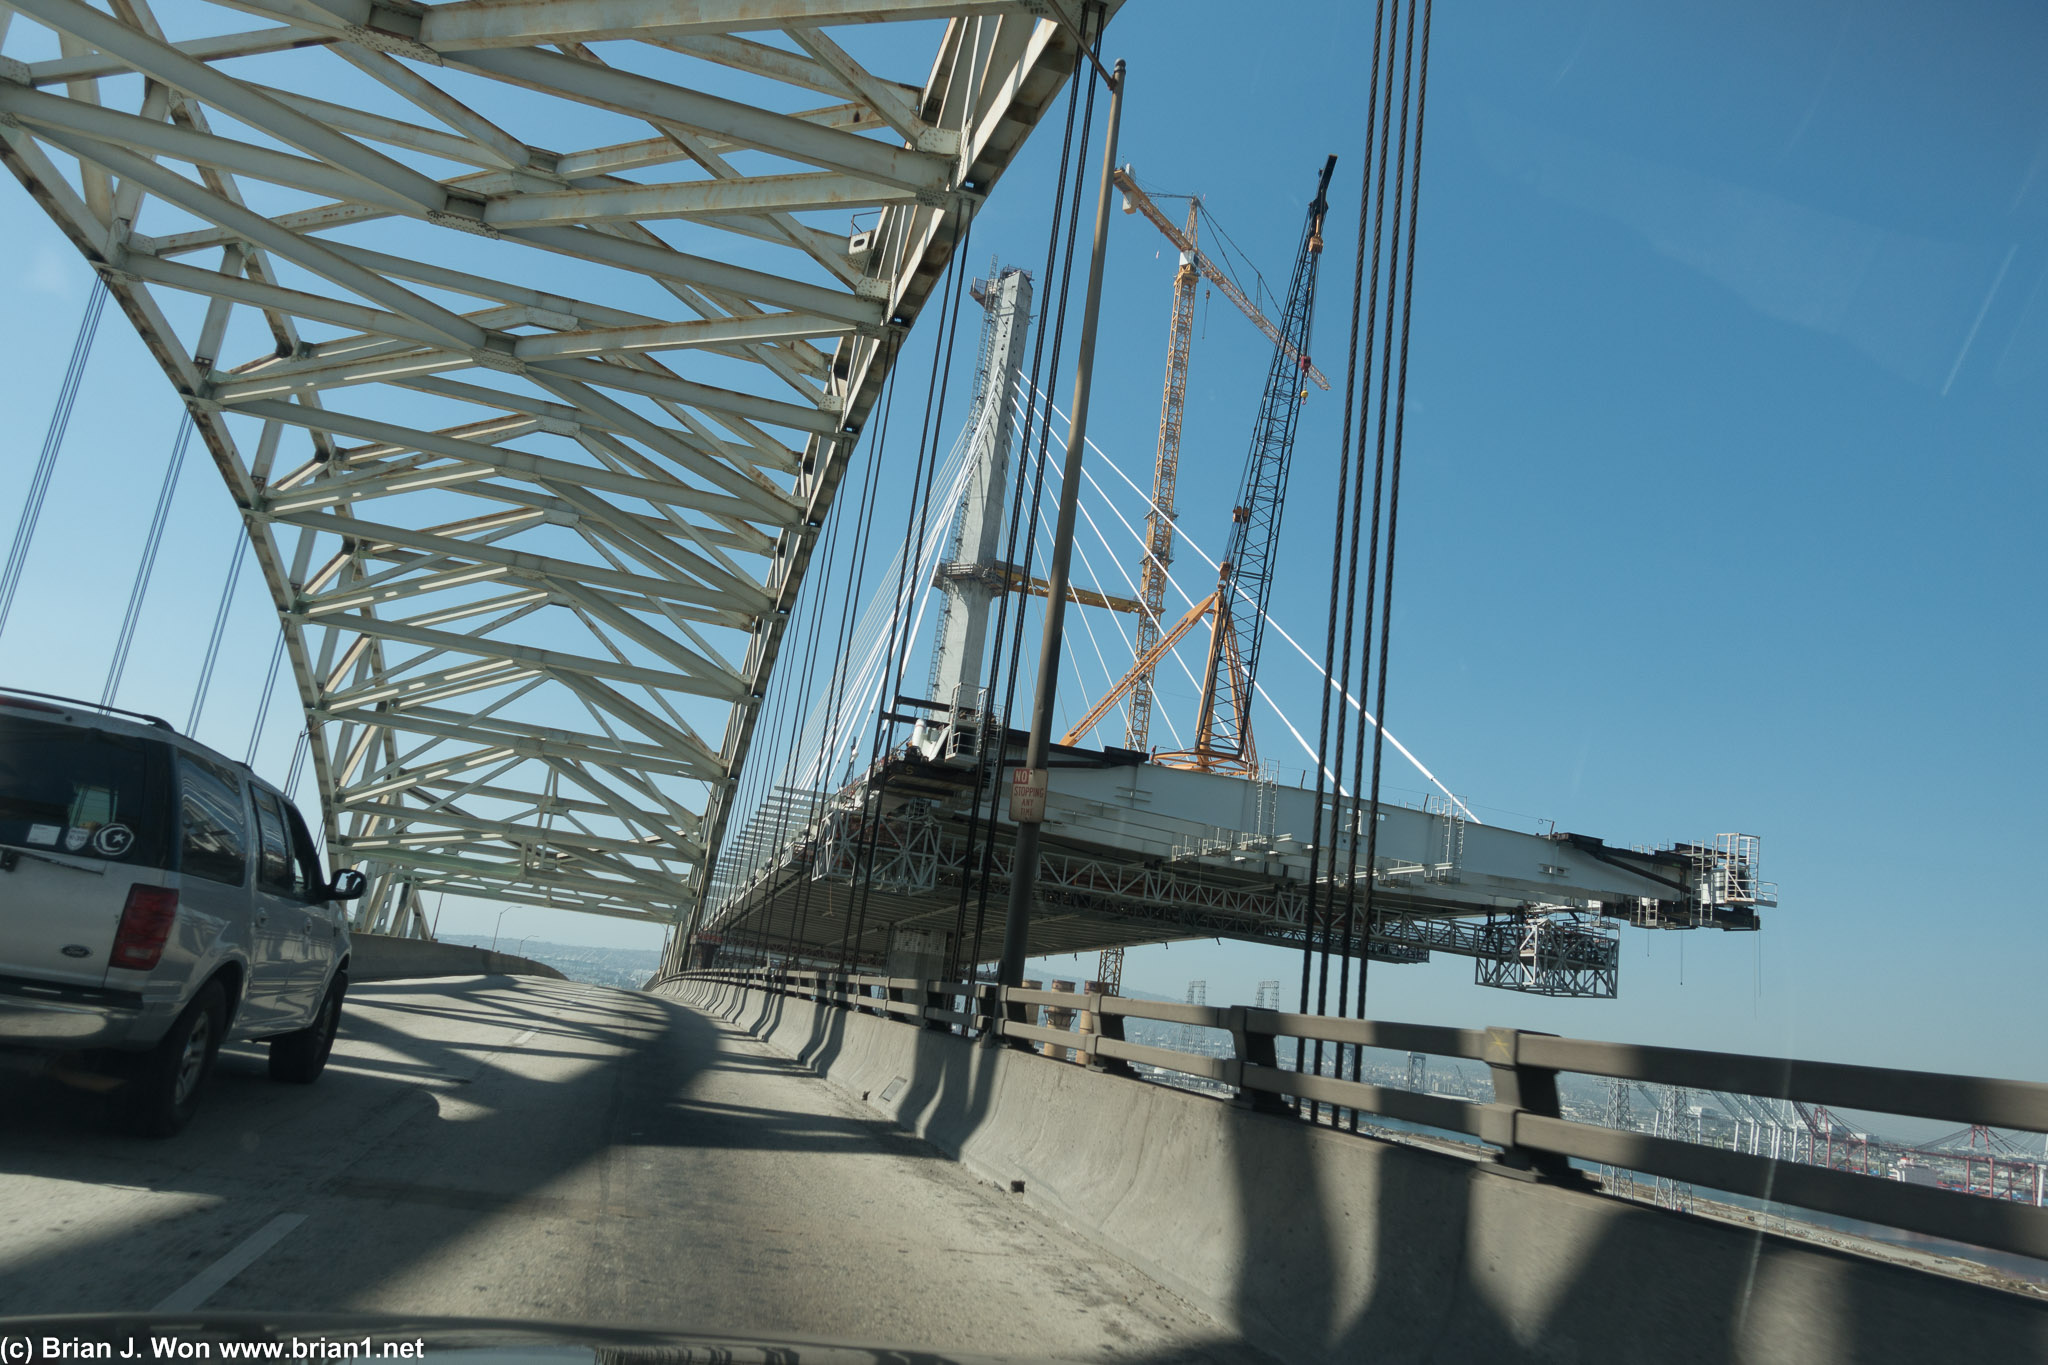 Kinda cool to see the new bridge in progress!